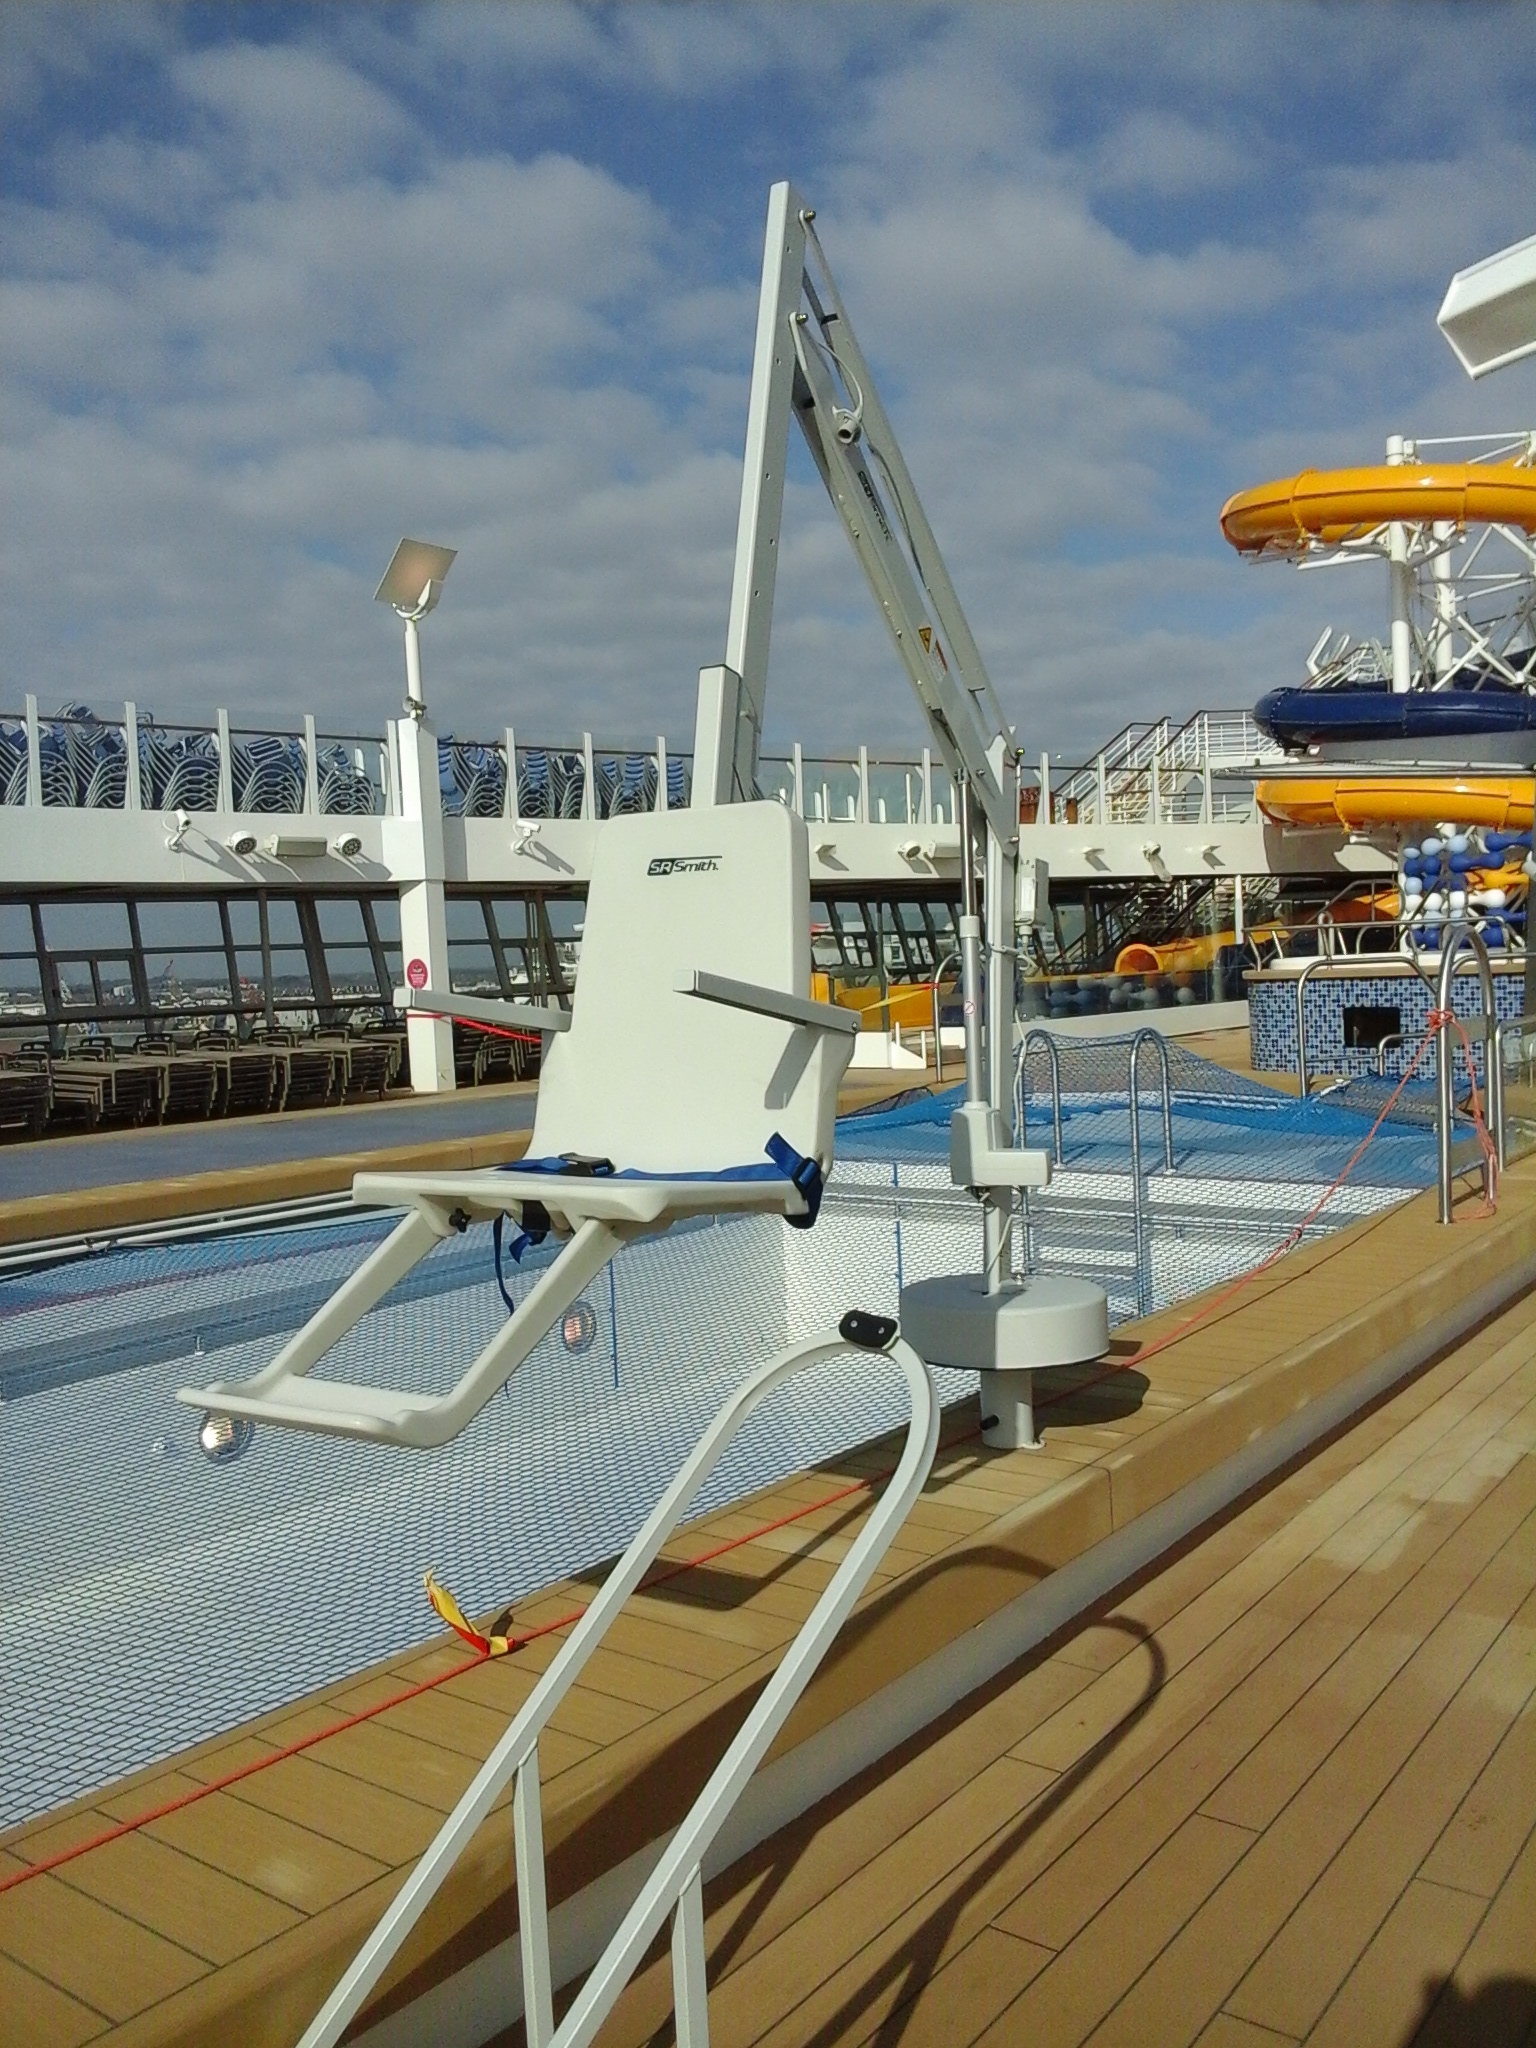 splash-pool-hoist-cruise-liner-disabled-access.jpg